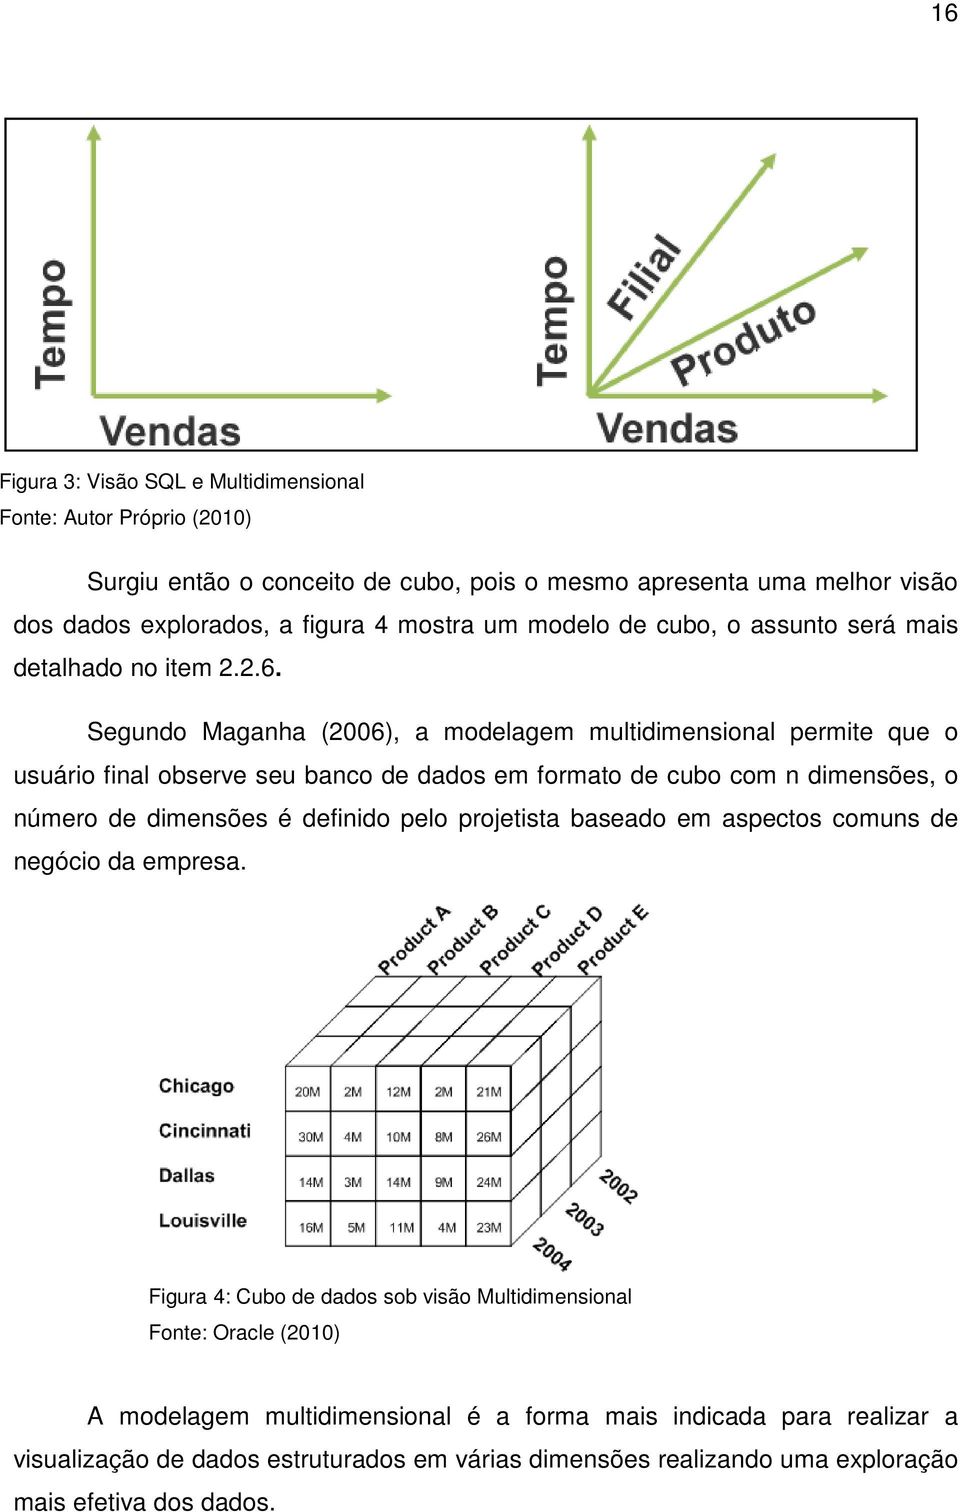 Segundo Maganha (2006), a modelagem multidimensional permite que o usuário final observe seu banco de dados em formato de cubo com n dimensões, o número de dimensões é definido pelo